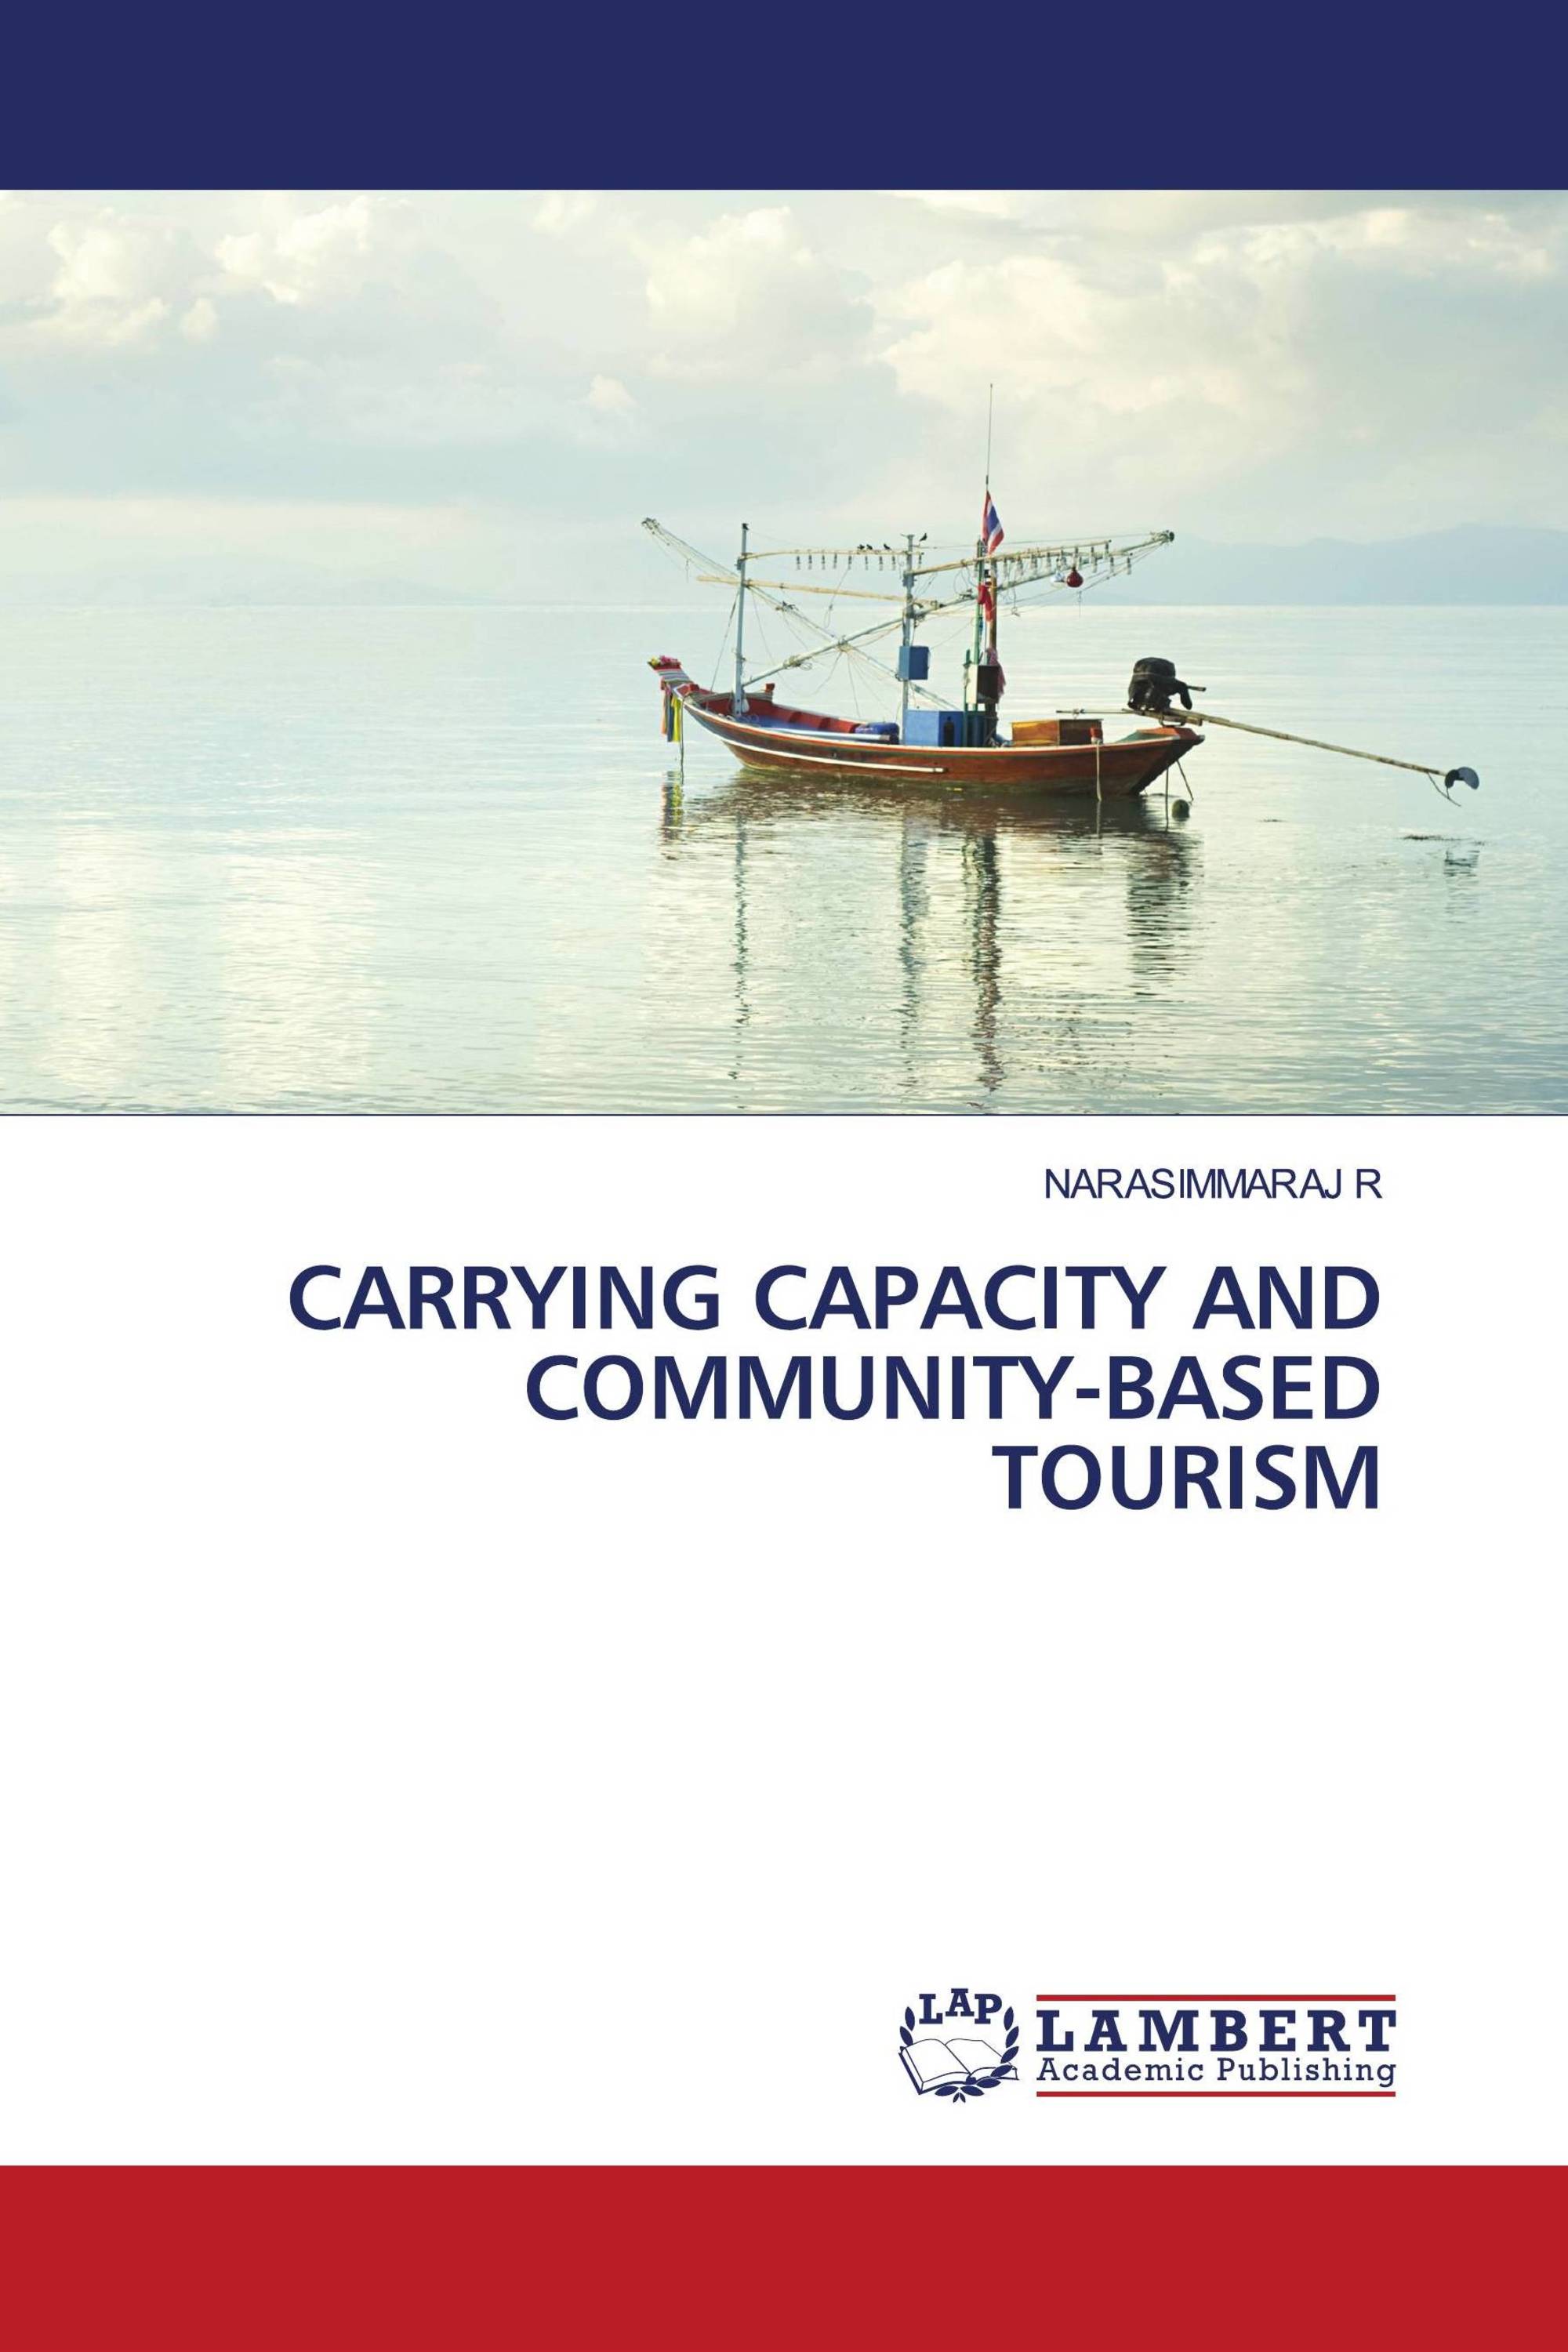 pengertian community based tourism menurut para ahli